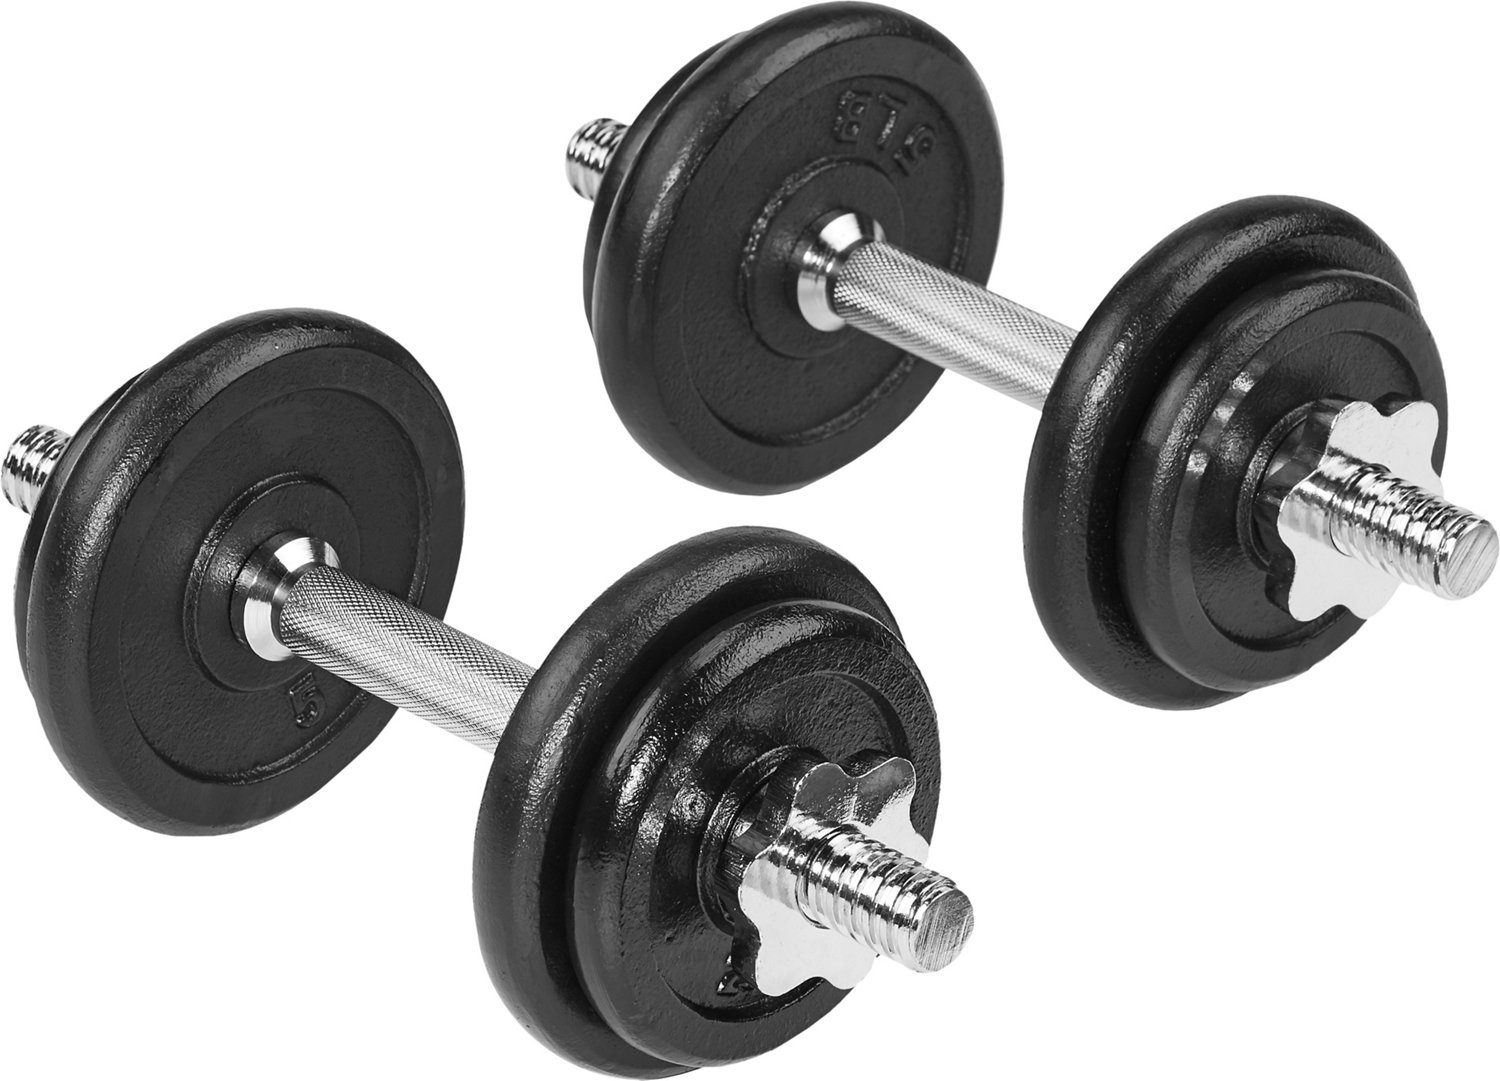  Rep Adjustable Dumbbells - 40 lb Set : Sports & Outdoors